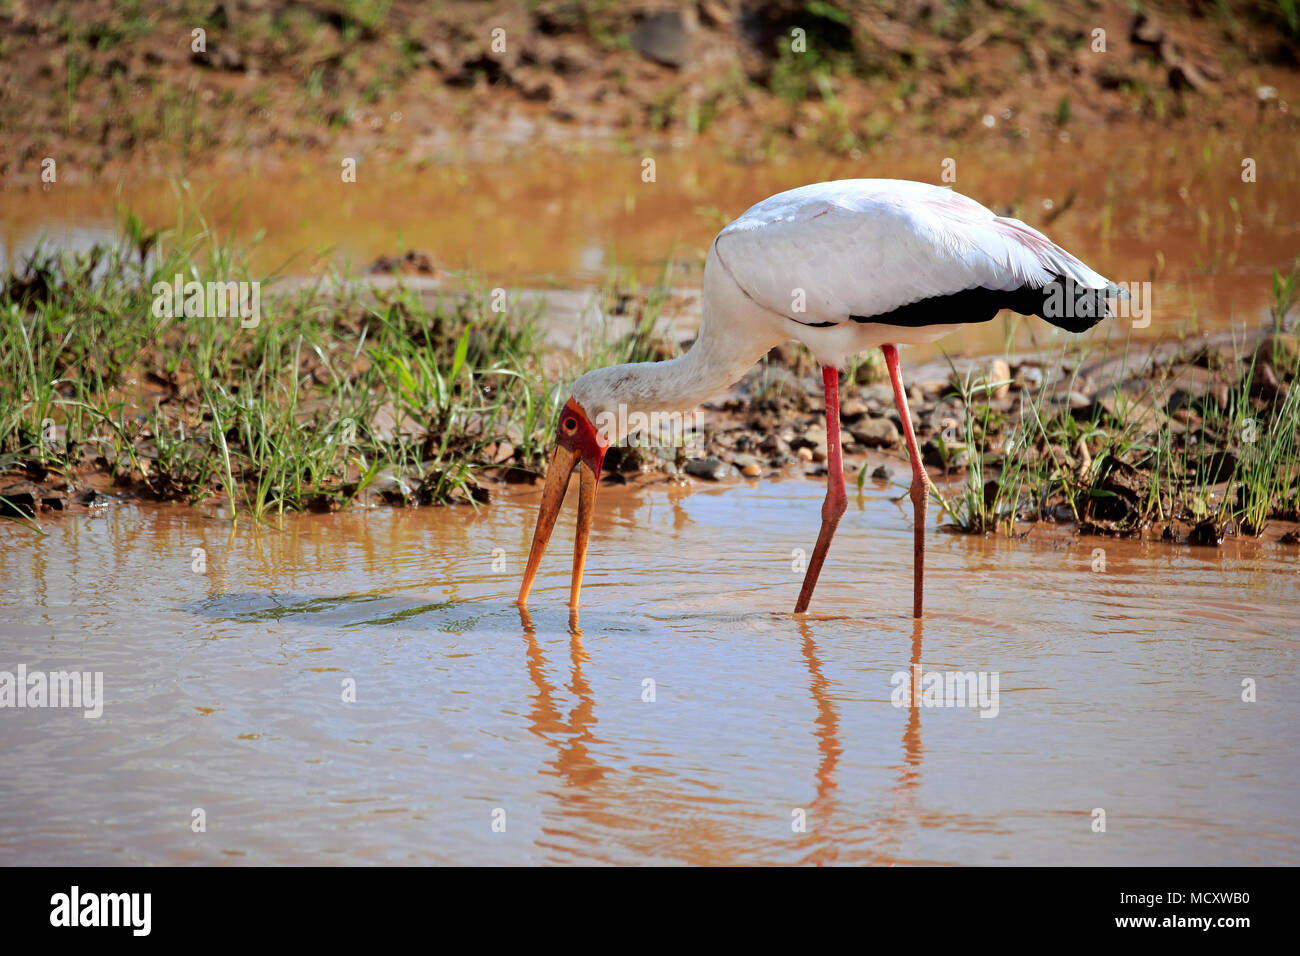 Giallo-fatturati stork (Mycteria ibis), Adulto, sull'acqua rovistando, Kruger National Park, Sud Africa Foto Stock